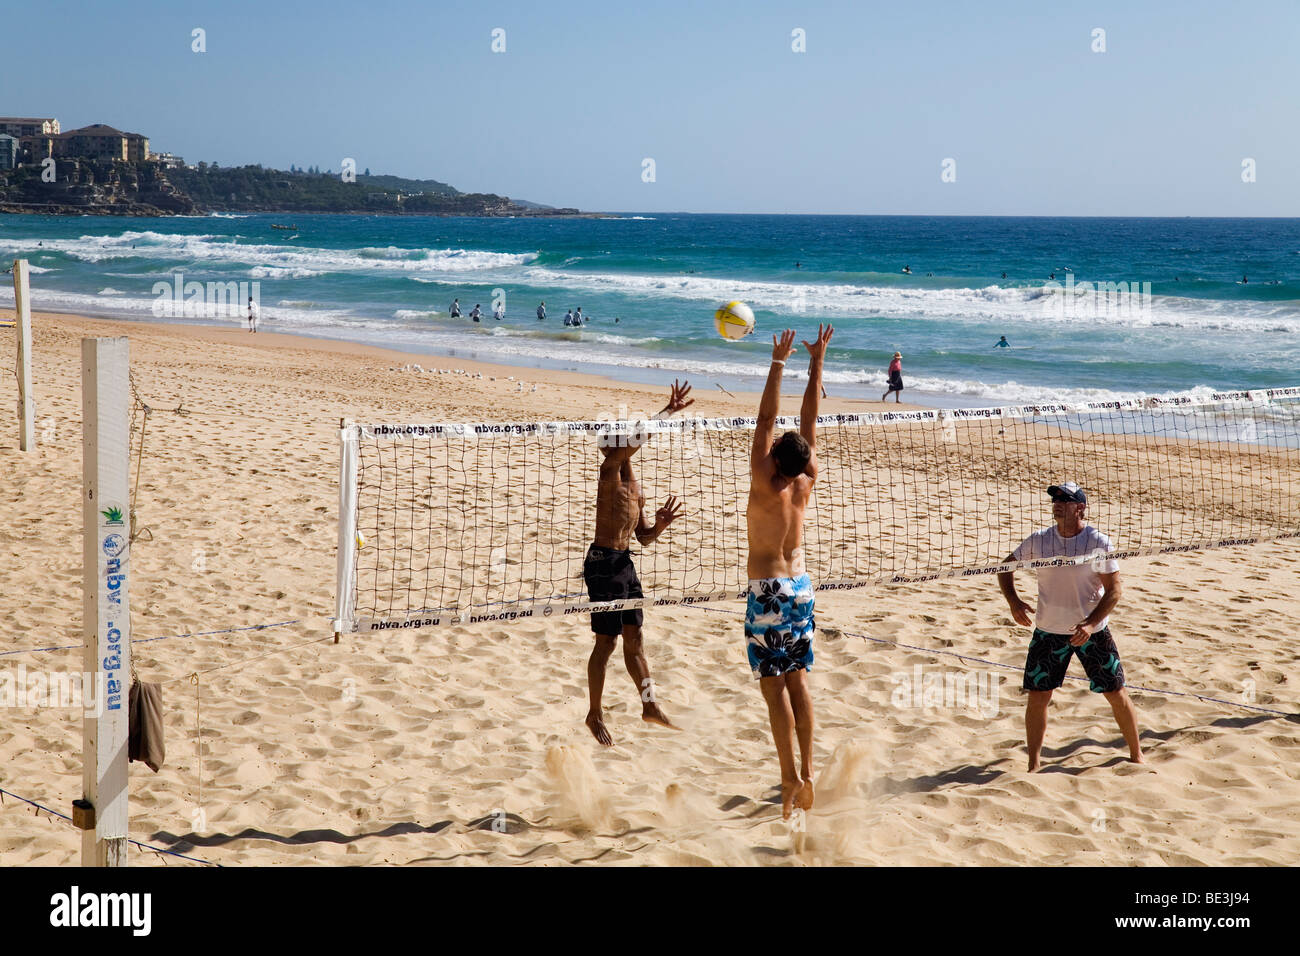 Volleyballers Beach sur la plage de Manly Beach. Sydney, New South Wales, Australia Banque D'Images